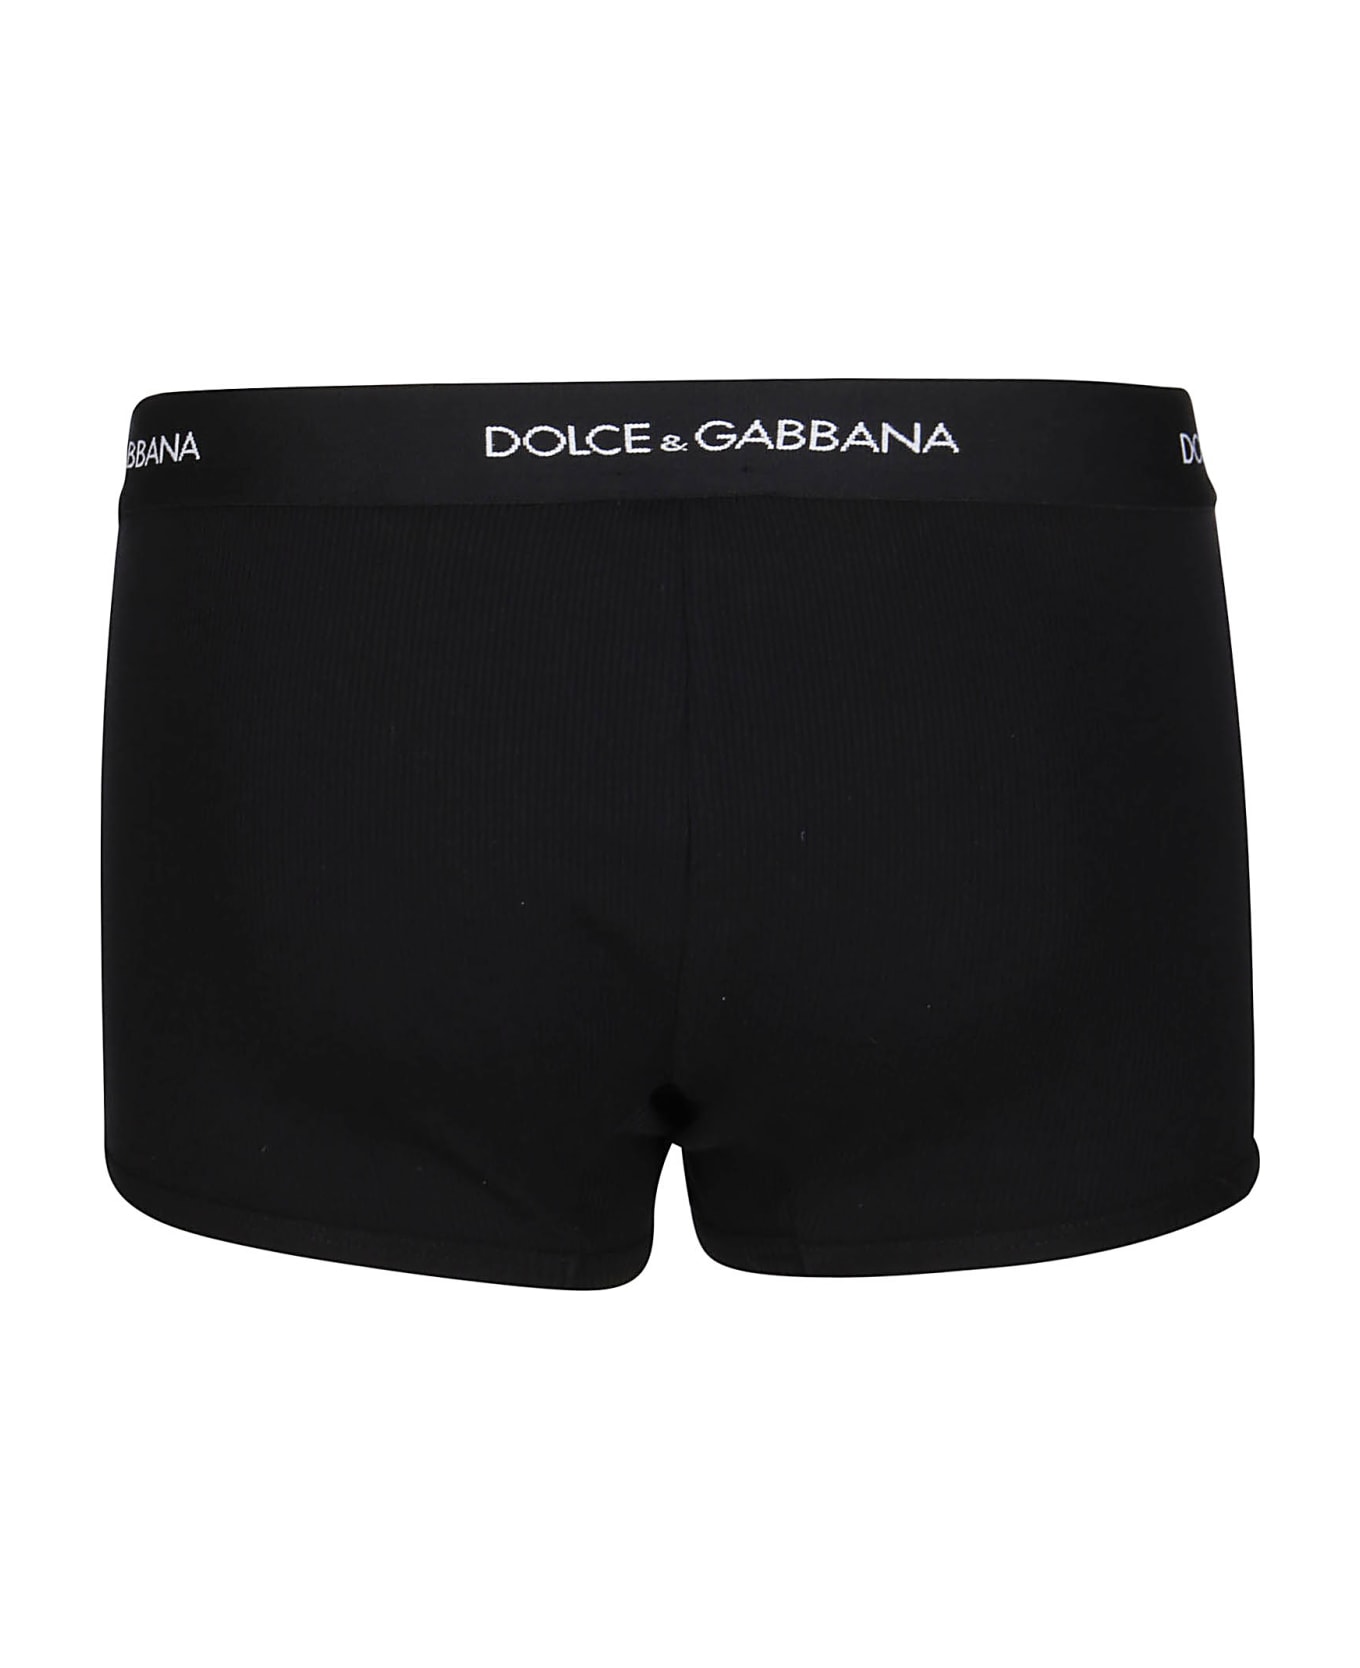 Dolce & Gabbana Black Cotton Boxers - NERO ショーツ